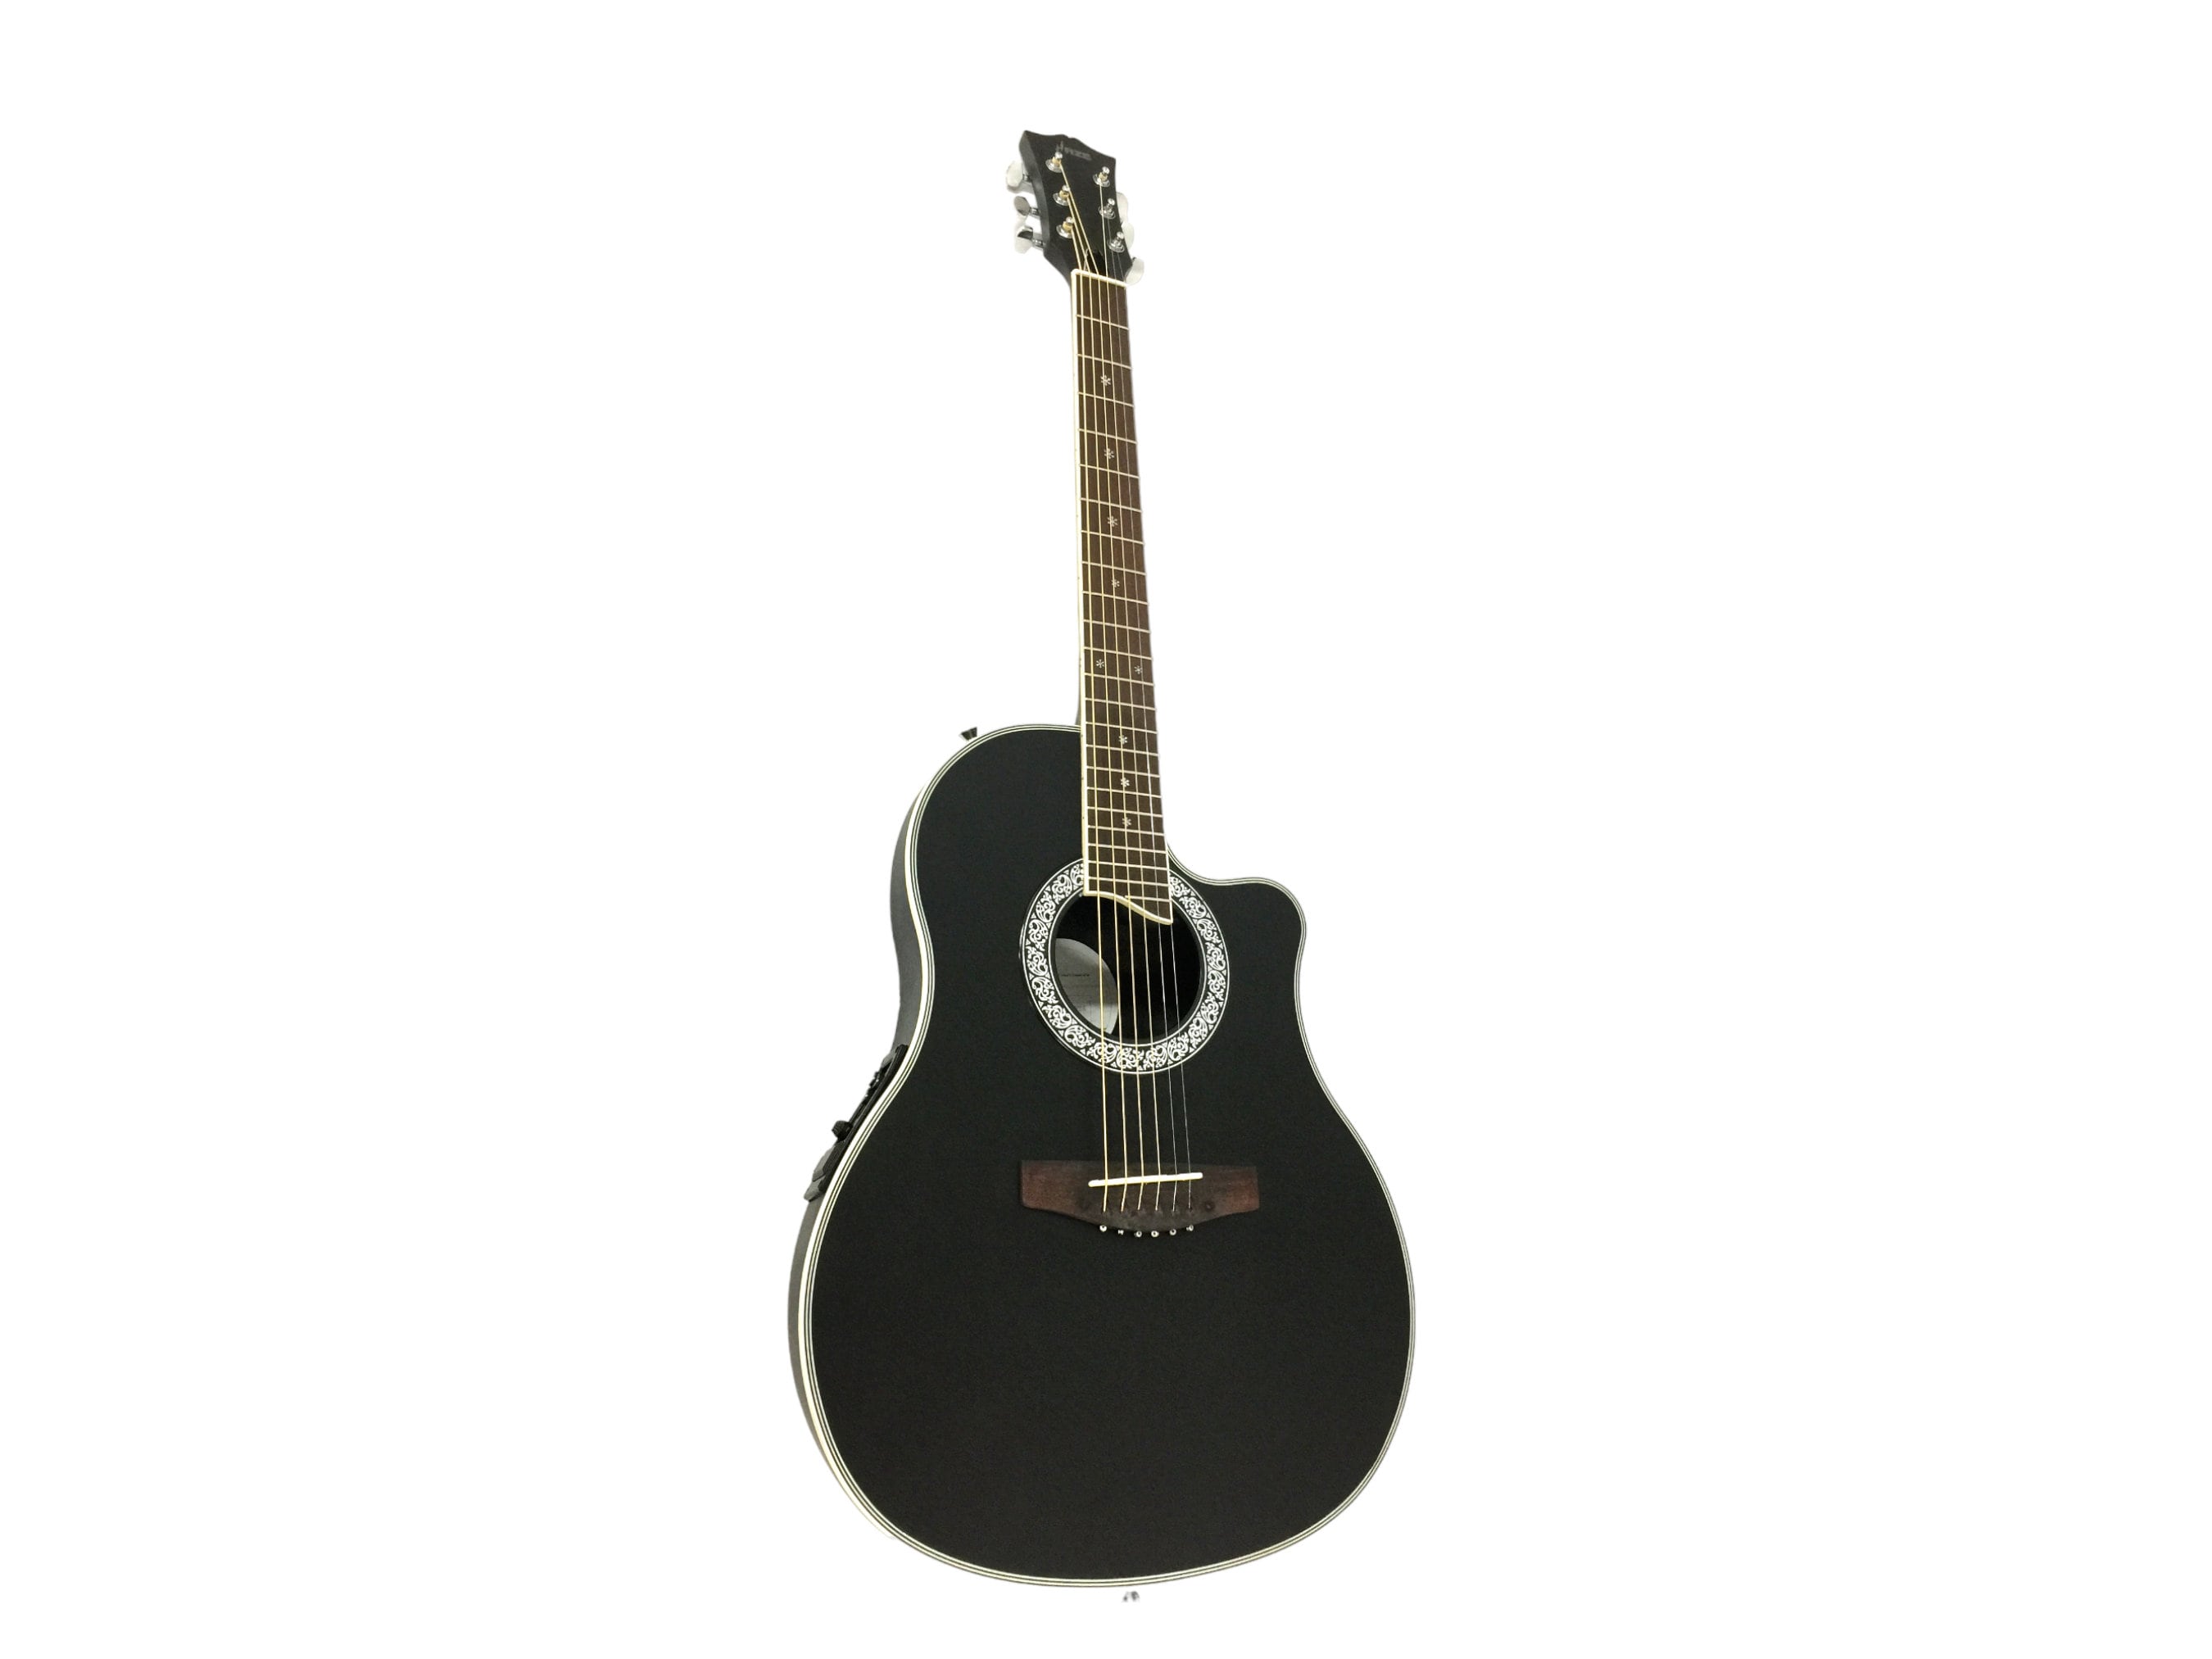 Caraya 36 Traveler Built-In Pickups/Tuner Acoustic Guitar